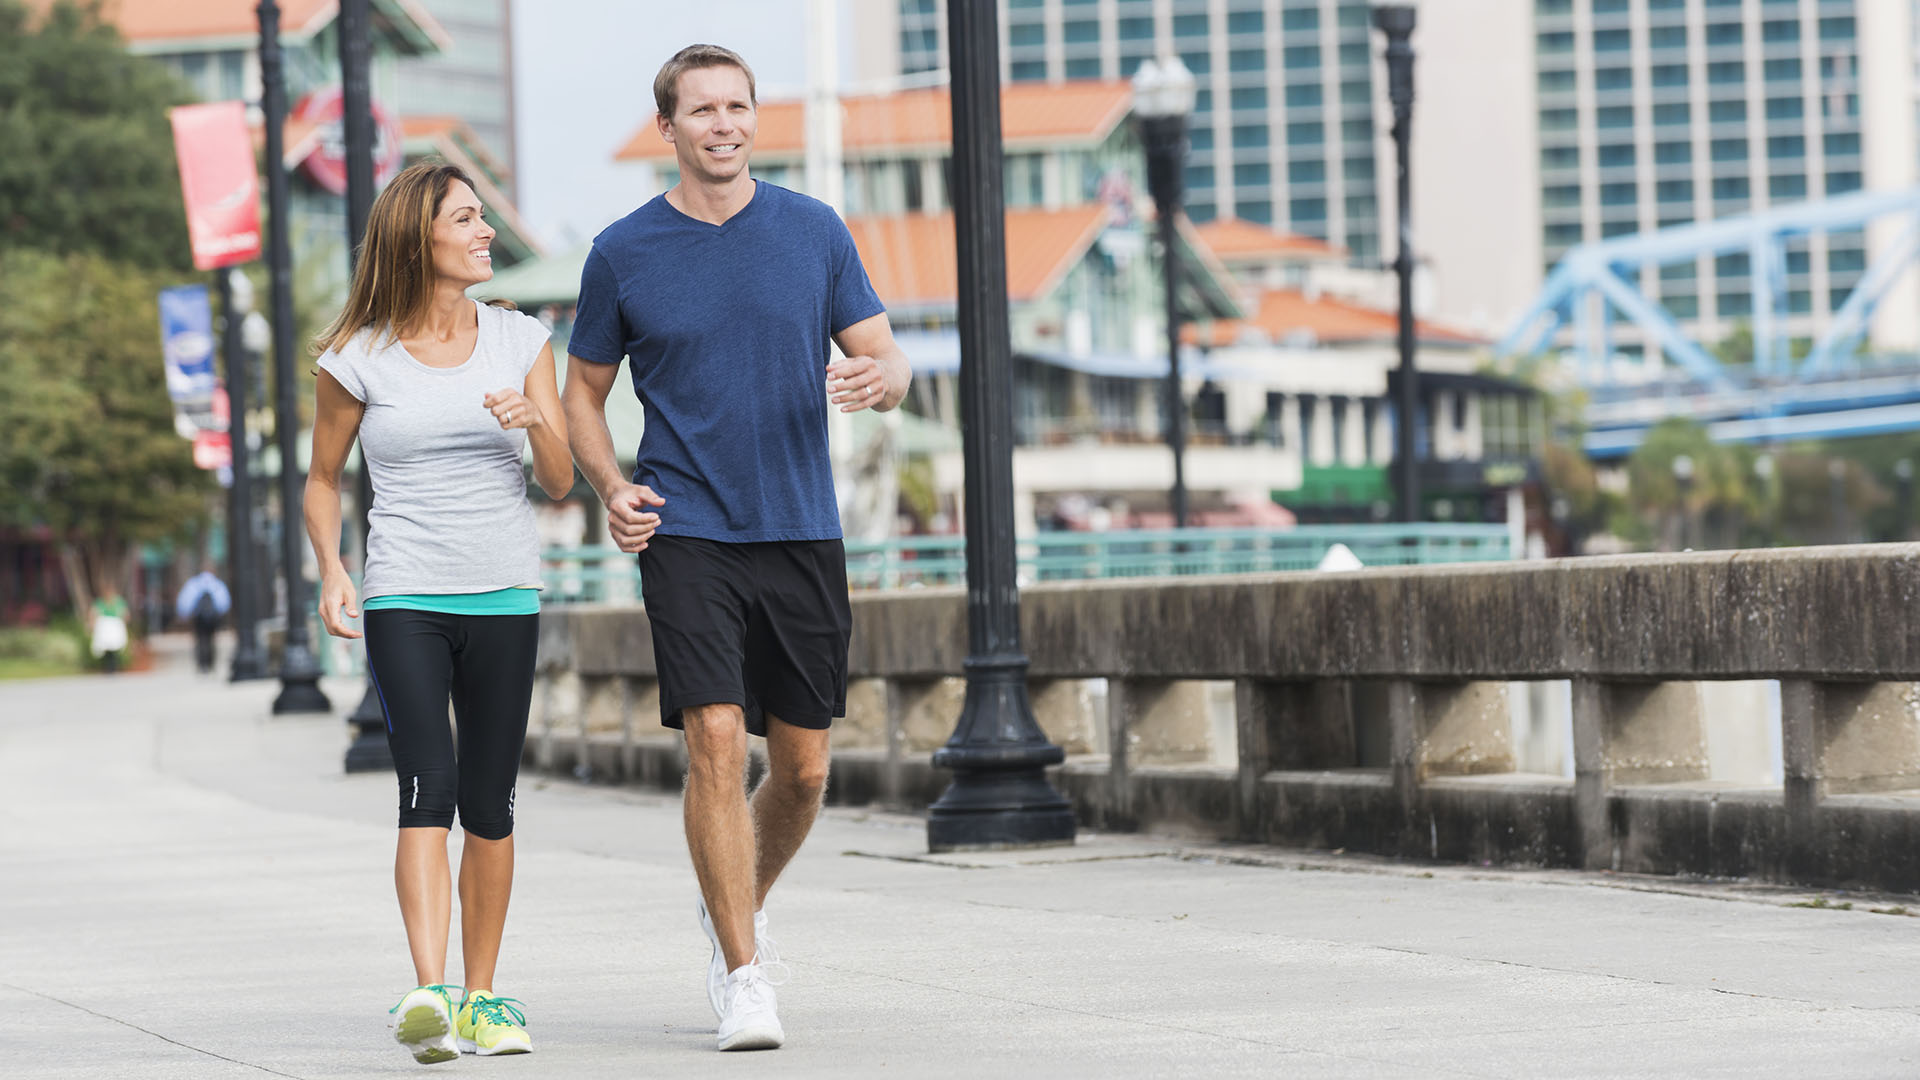 Ir a pie en lugar de trasladarse en auto o transporte público suma cientos de pasos a la actividad física diaria (Getty Images)